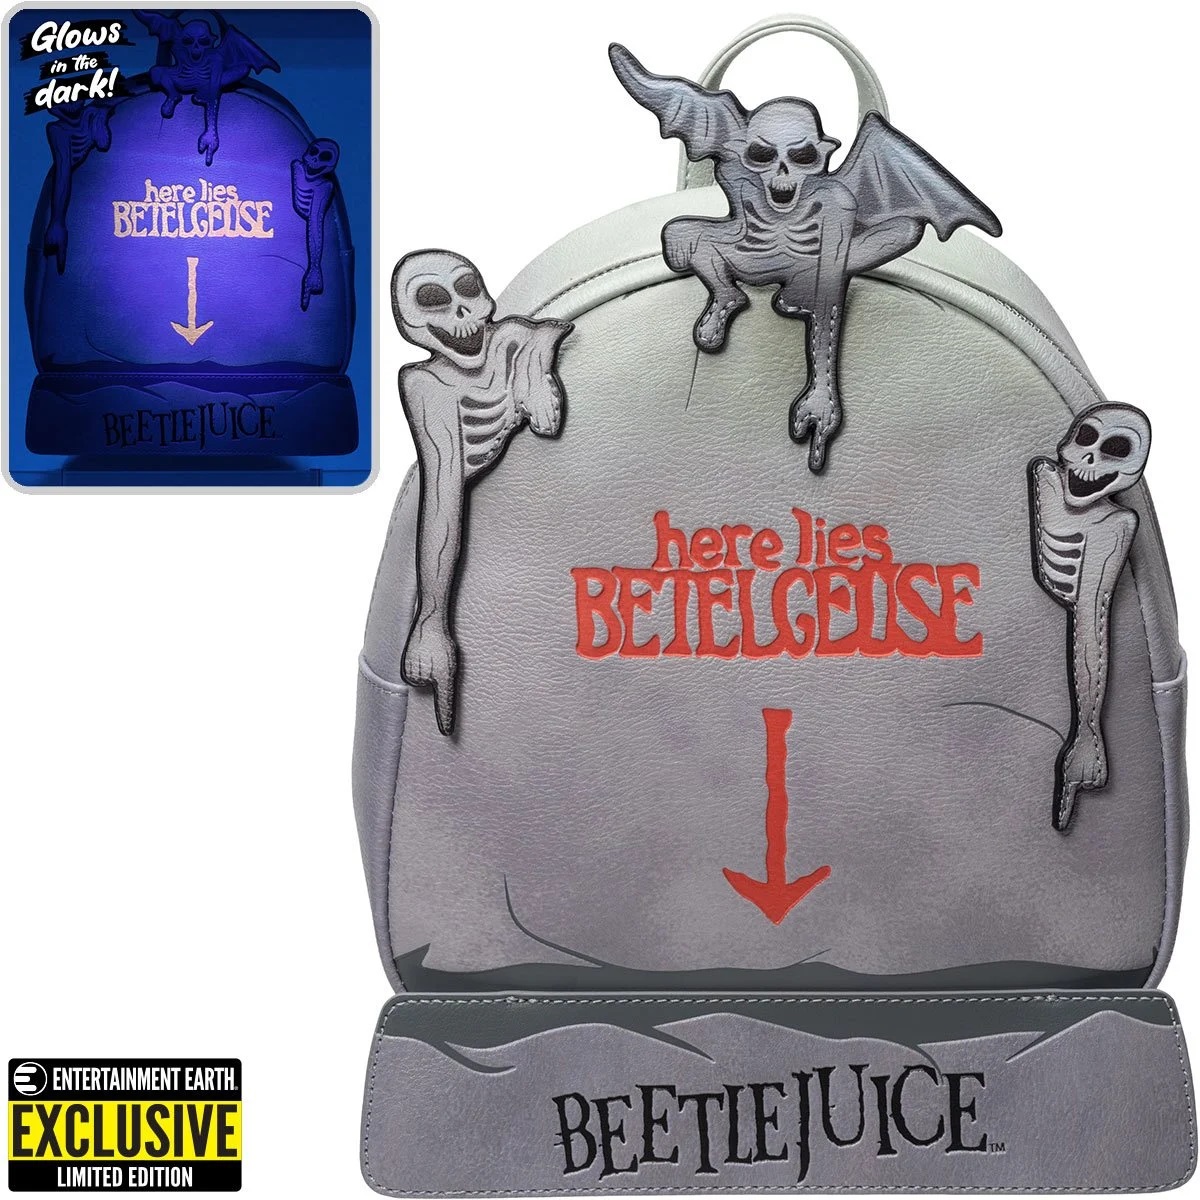 Beetlejuice Tombstone Glow-in-the-Dark Mini-Backpack - Screamers Costumes